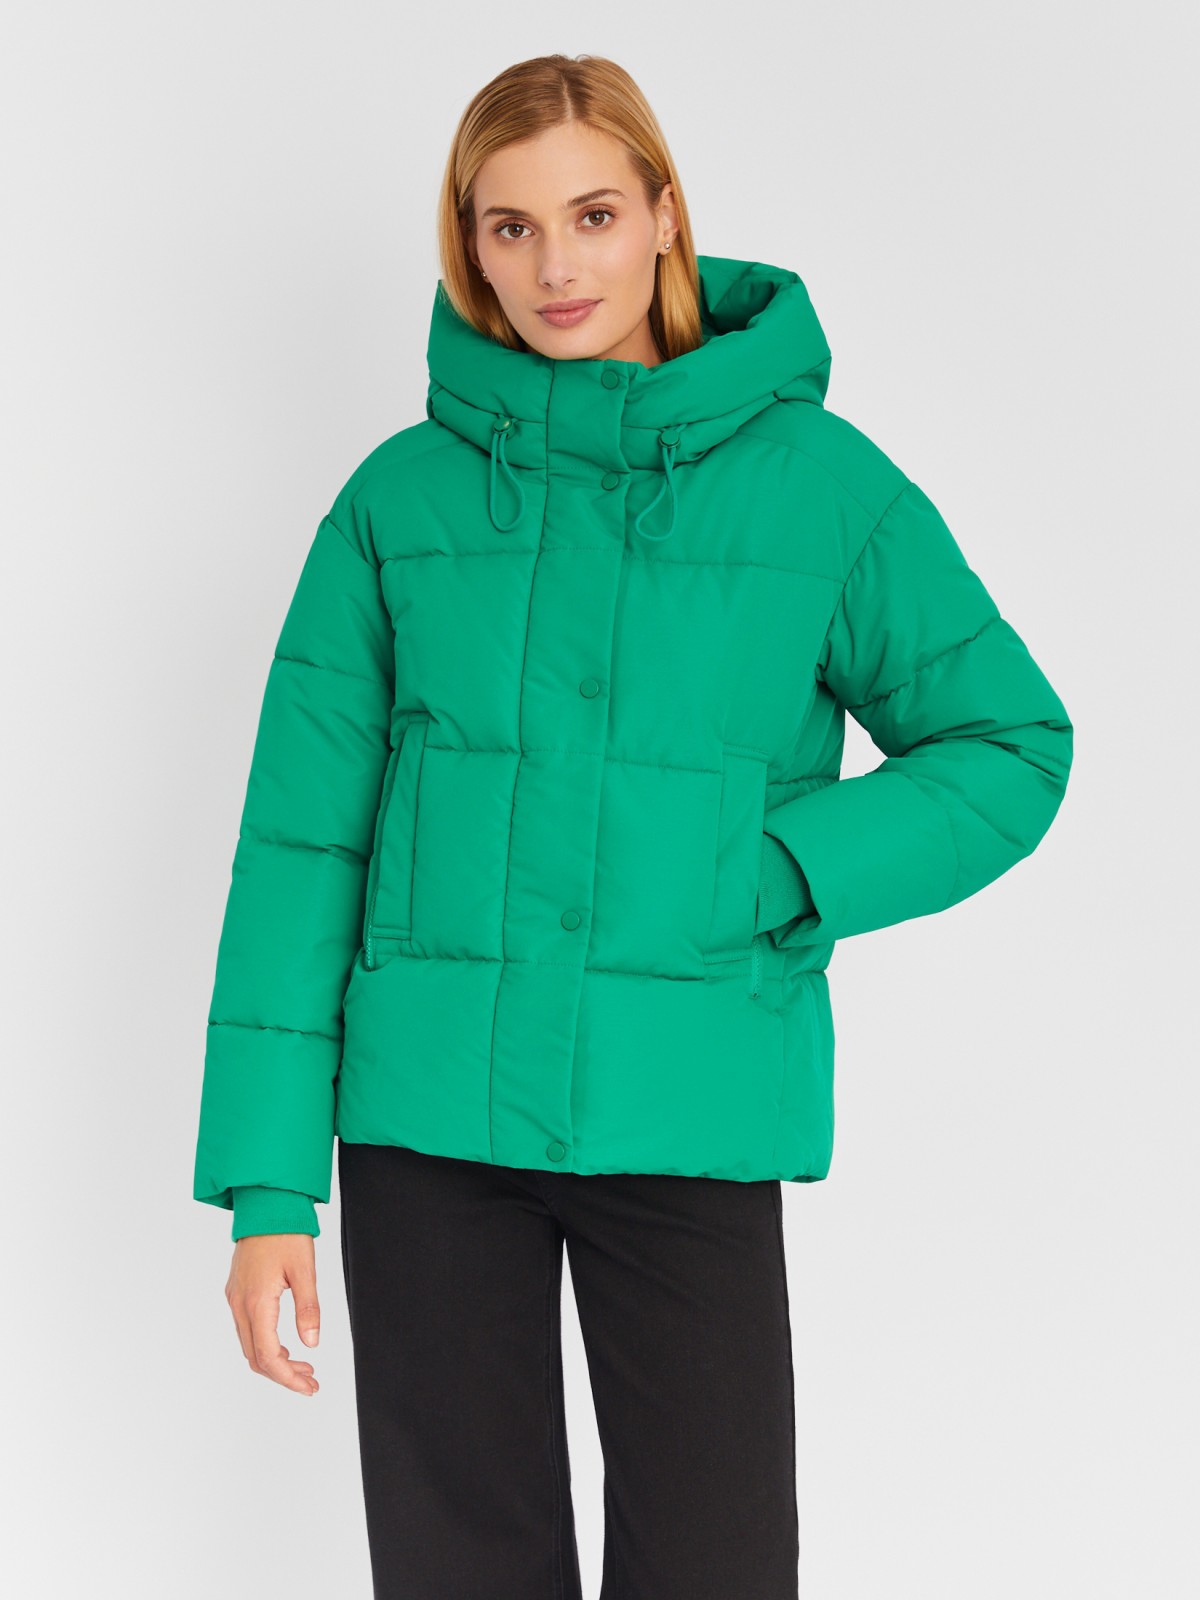 Тёплая стёганая куртка с капюшоном и удлинёнными внутренними манжетами zolla 023335112274, цвет зеленый, размер M - фото 3